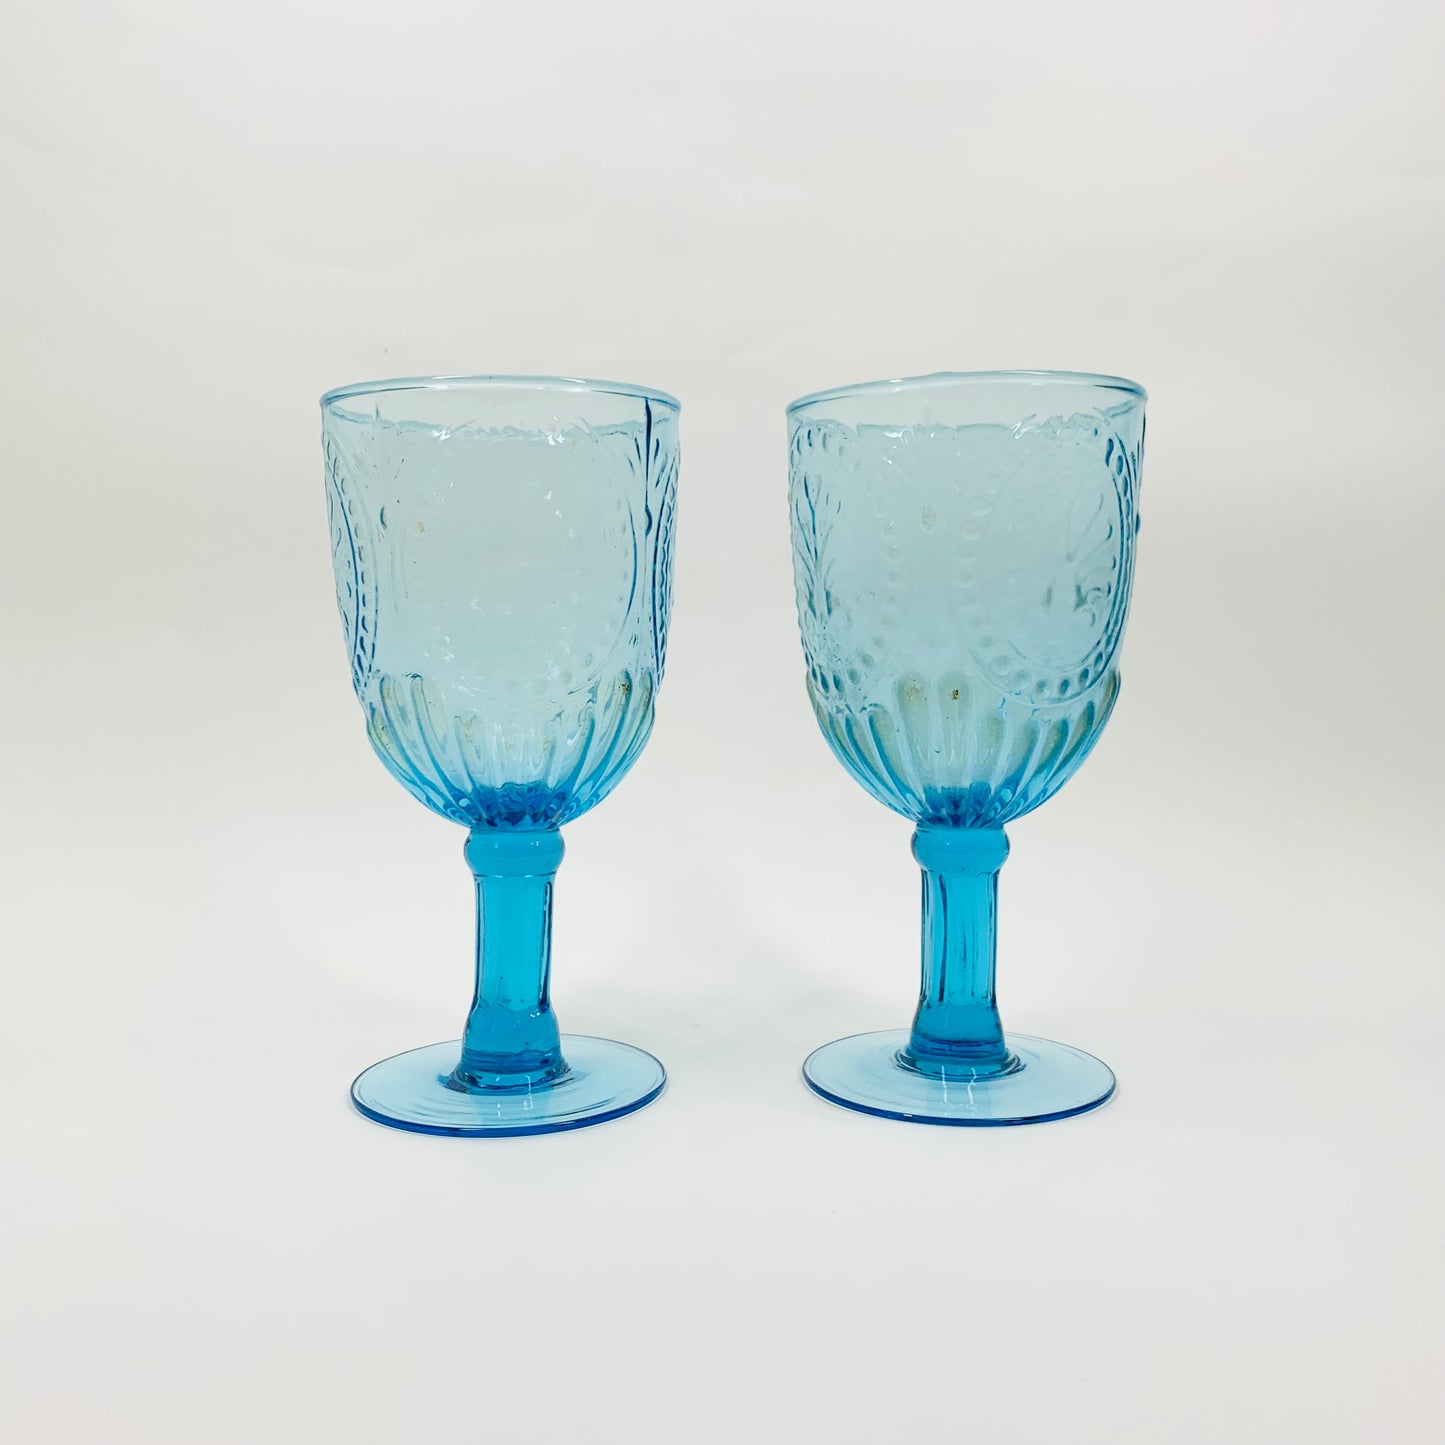 Depression blue glass goblets